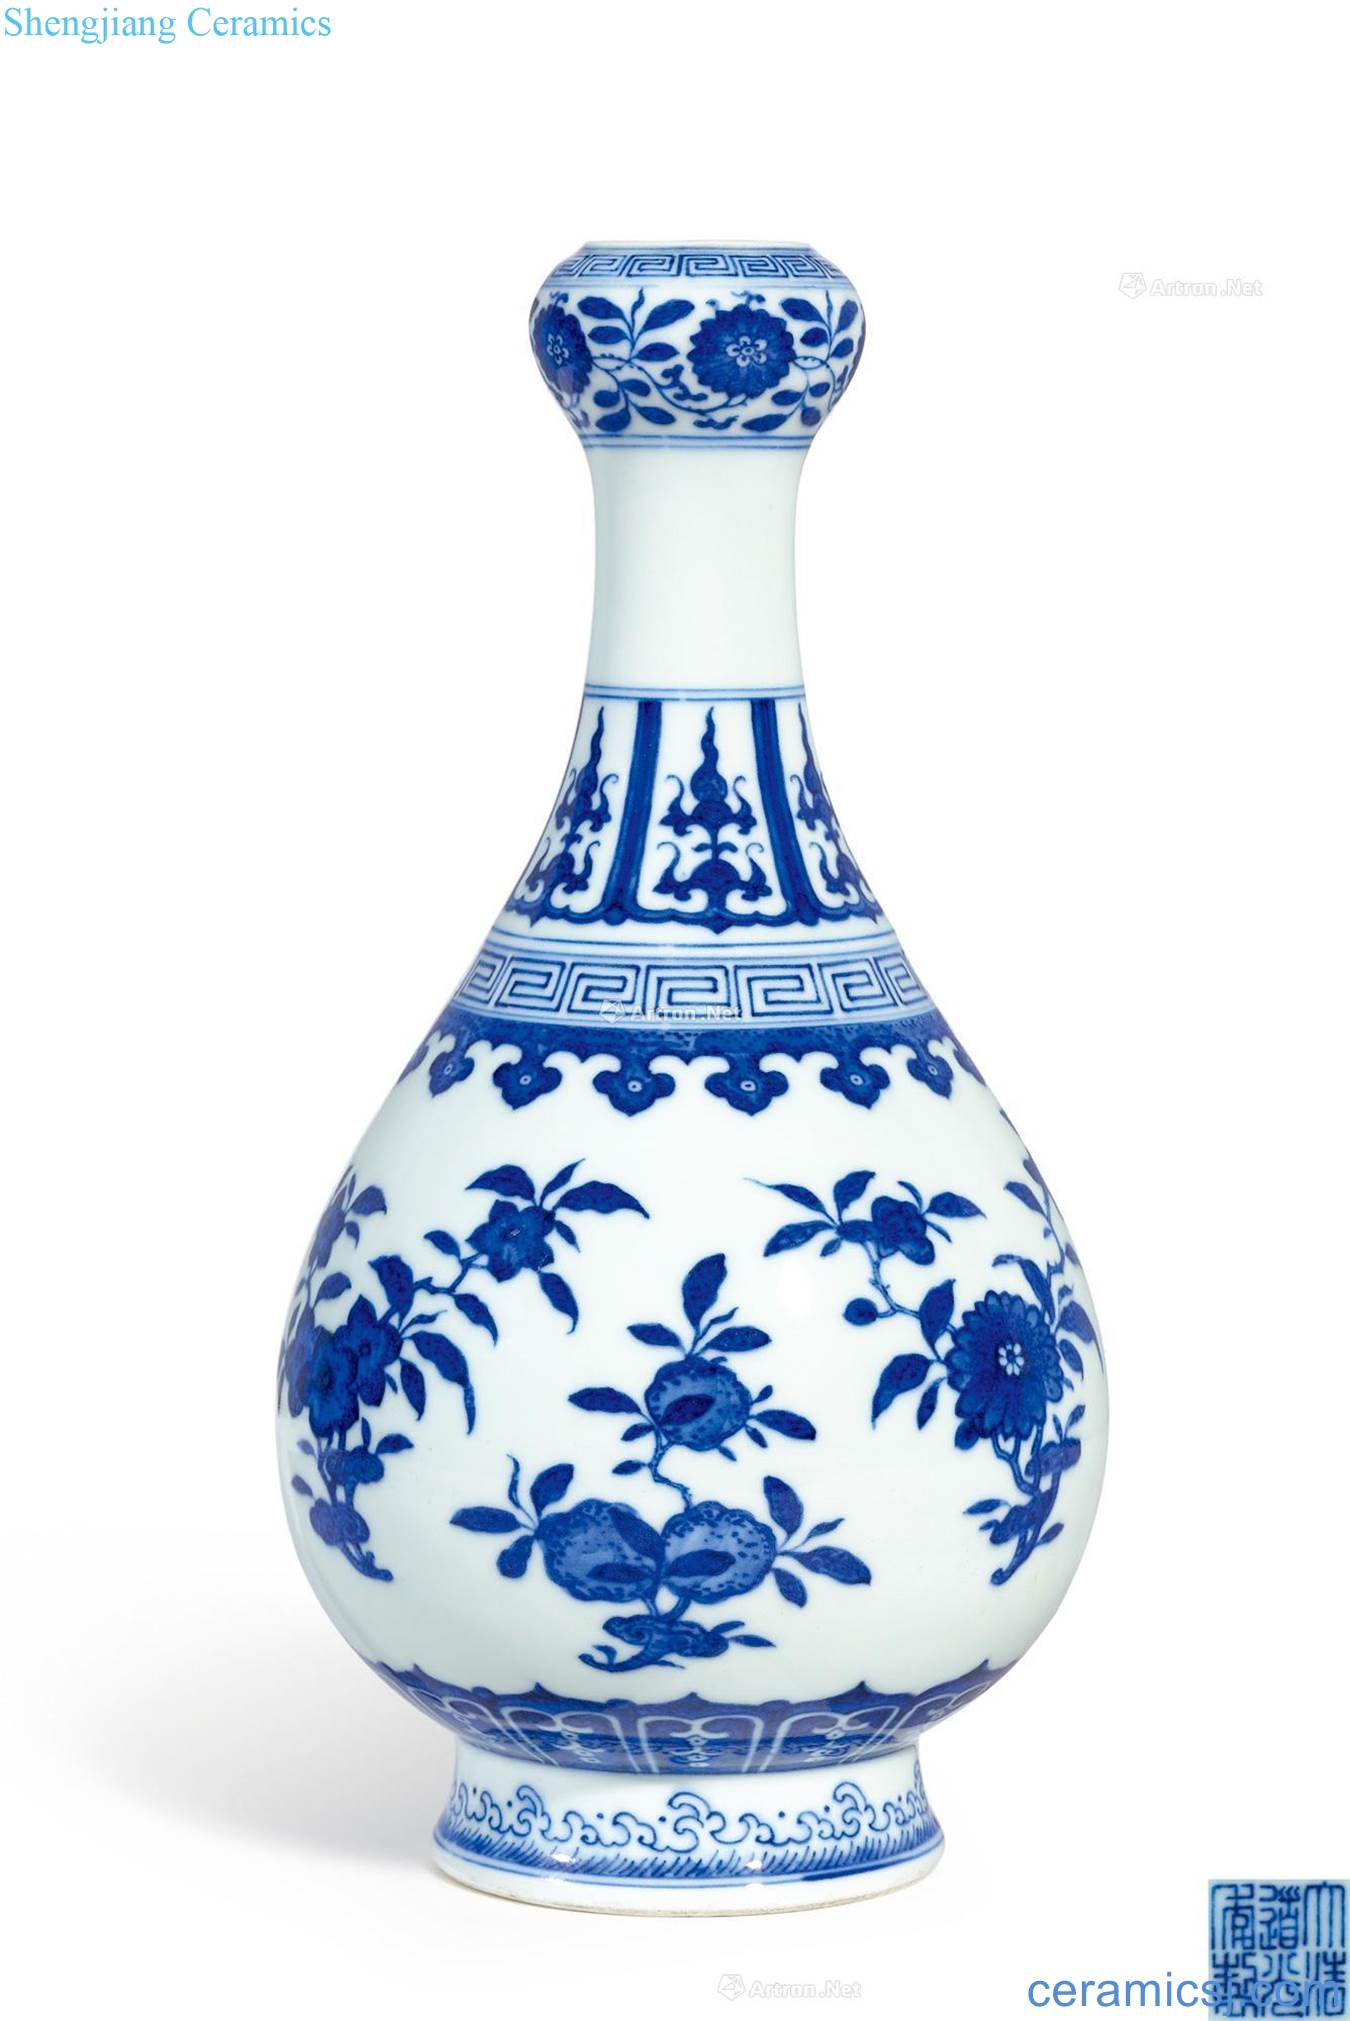 Qing daoguang Blue and white sanduo garlic bottles